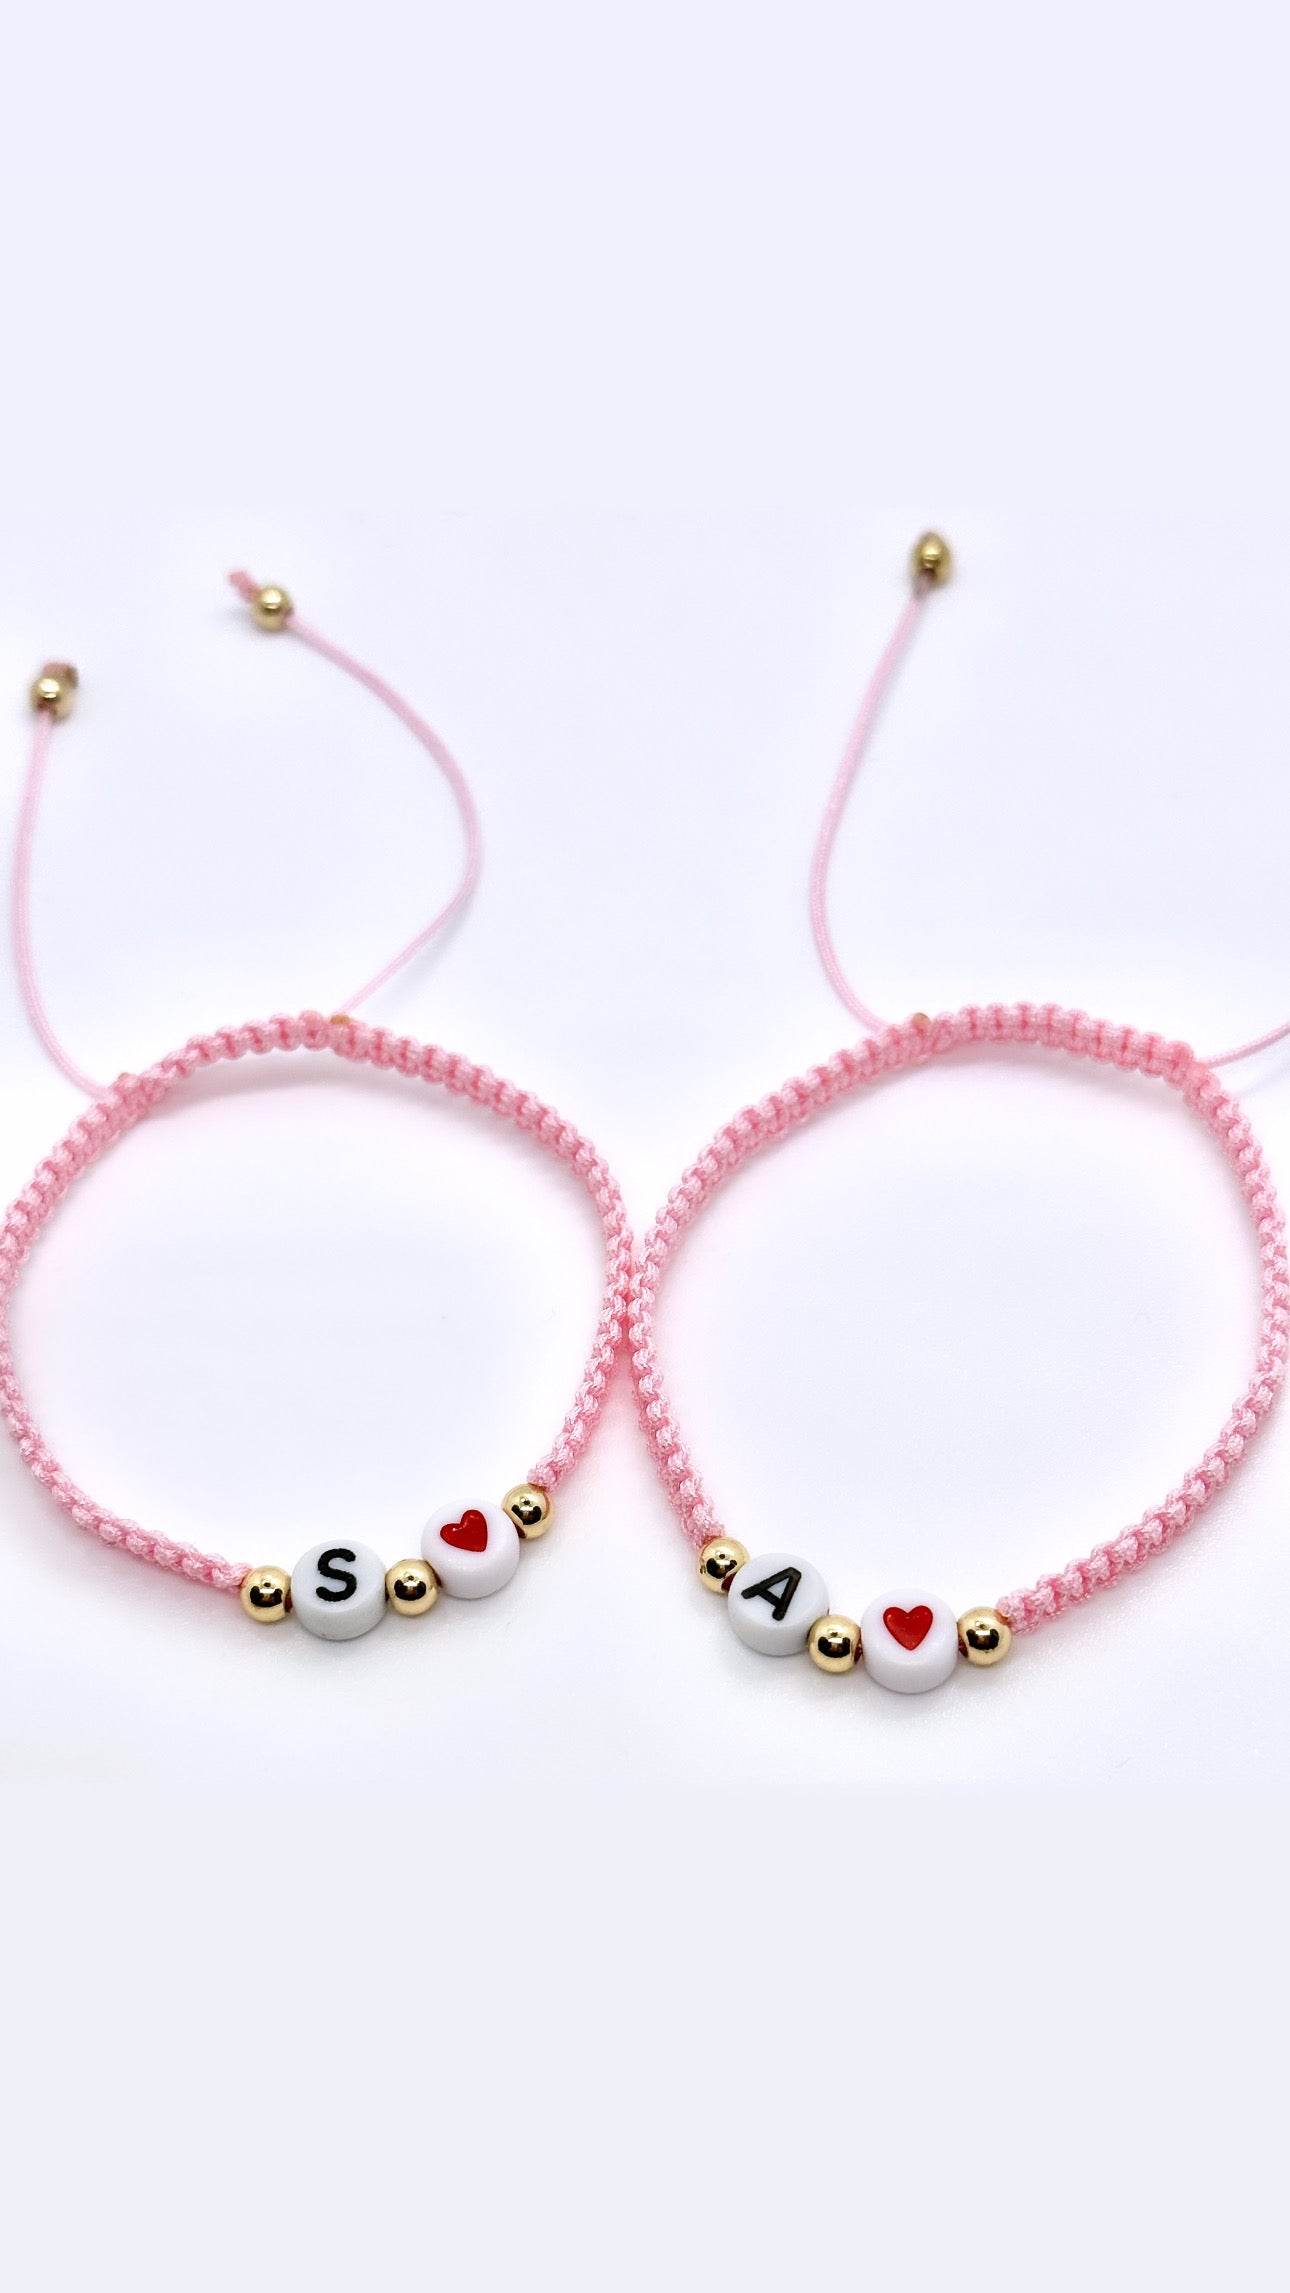 Matching Hearts Bracelets (customizable)